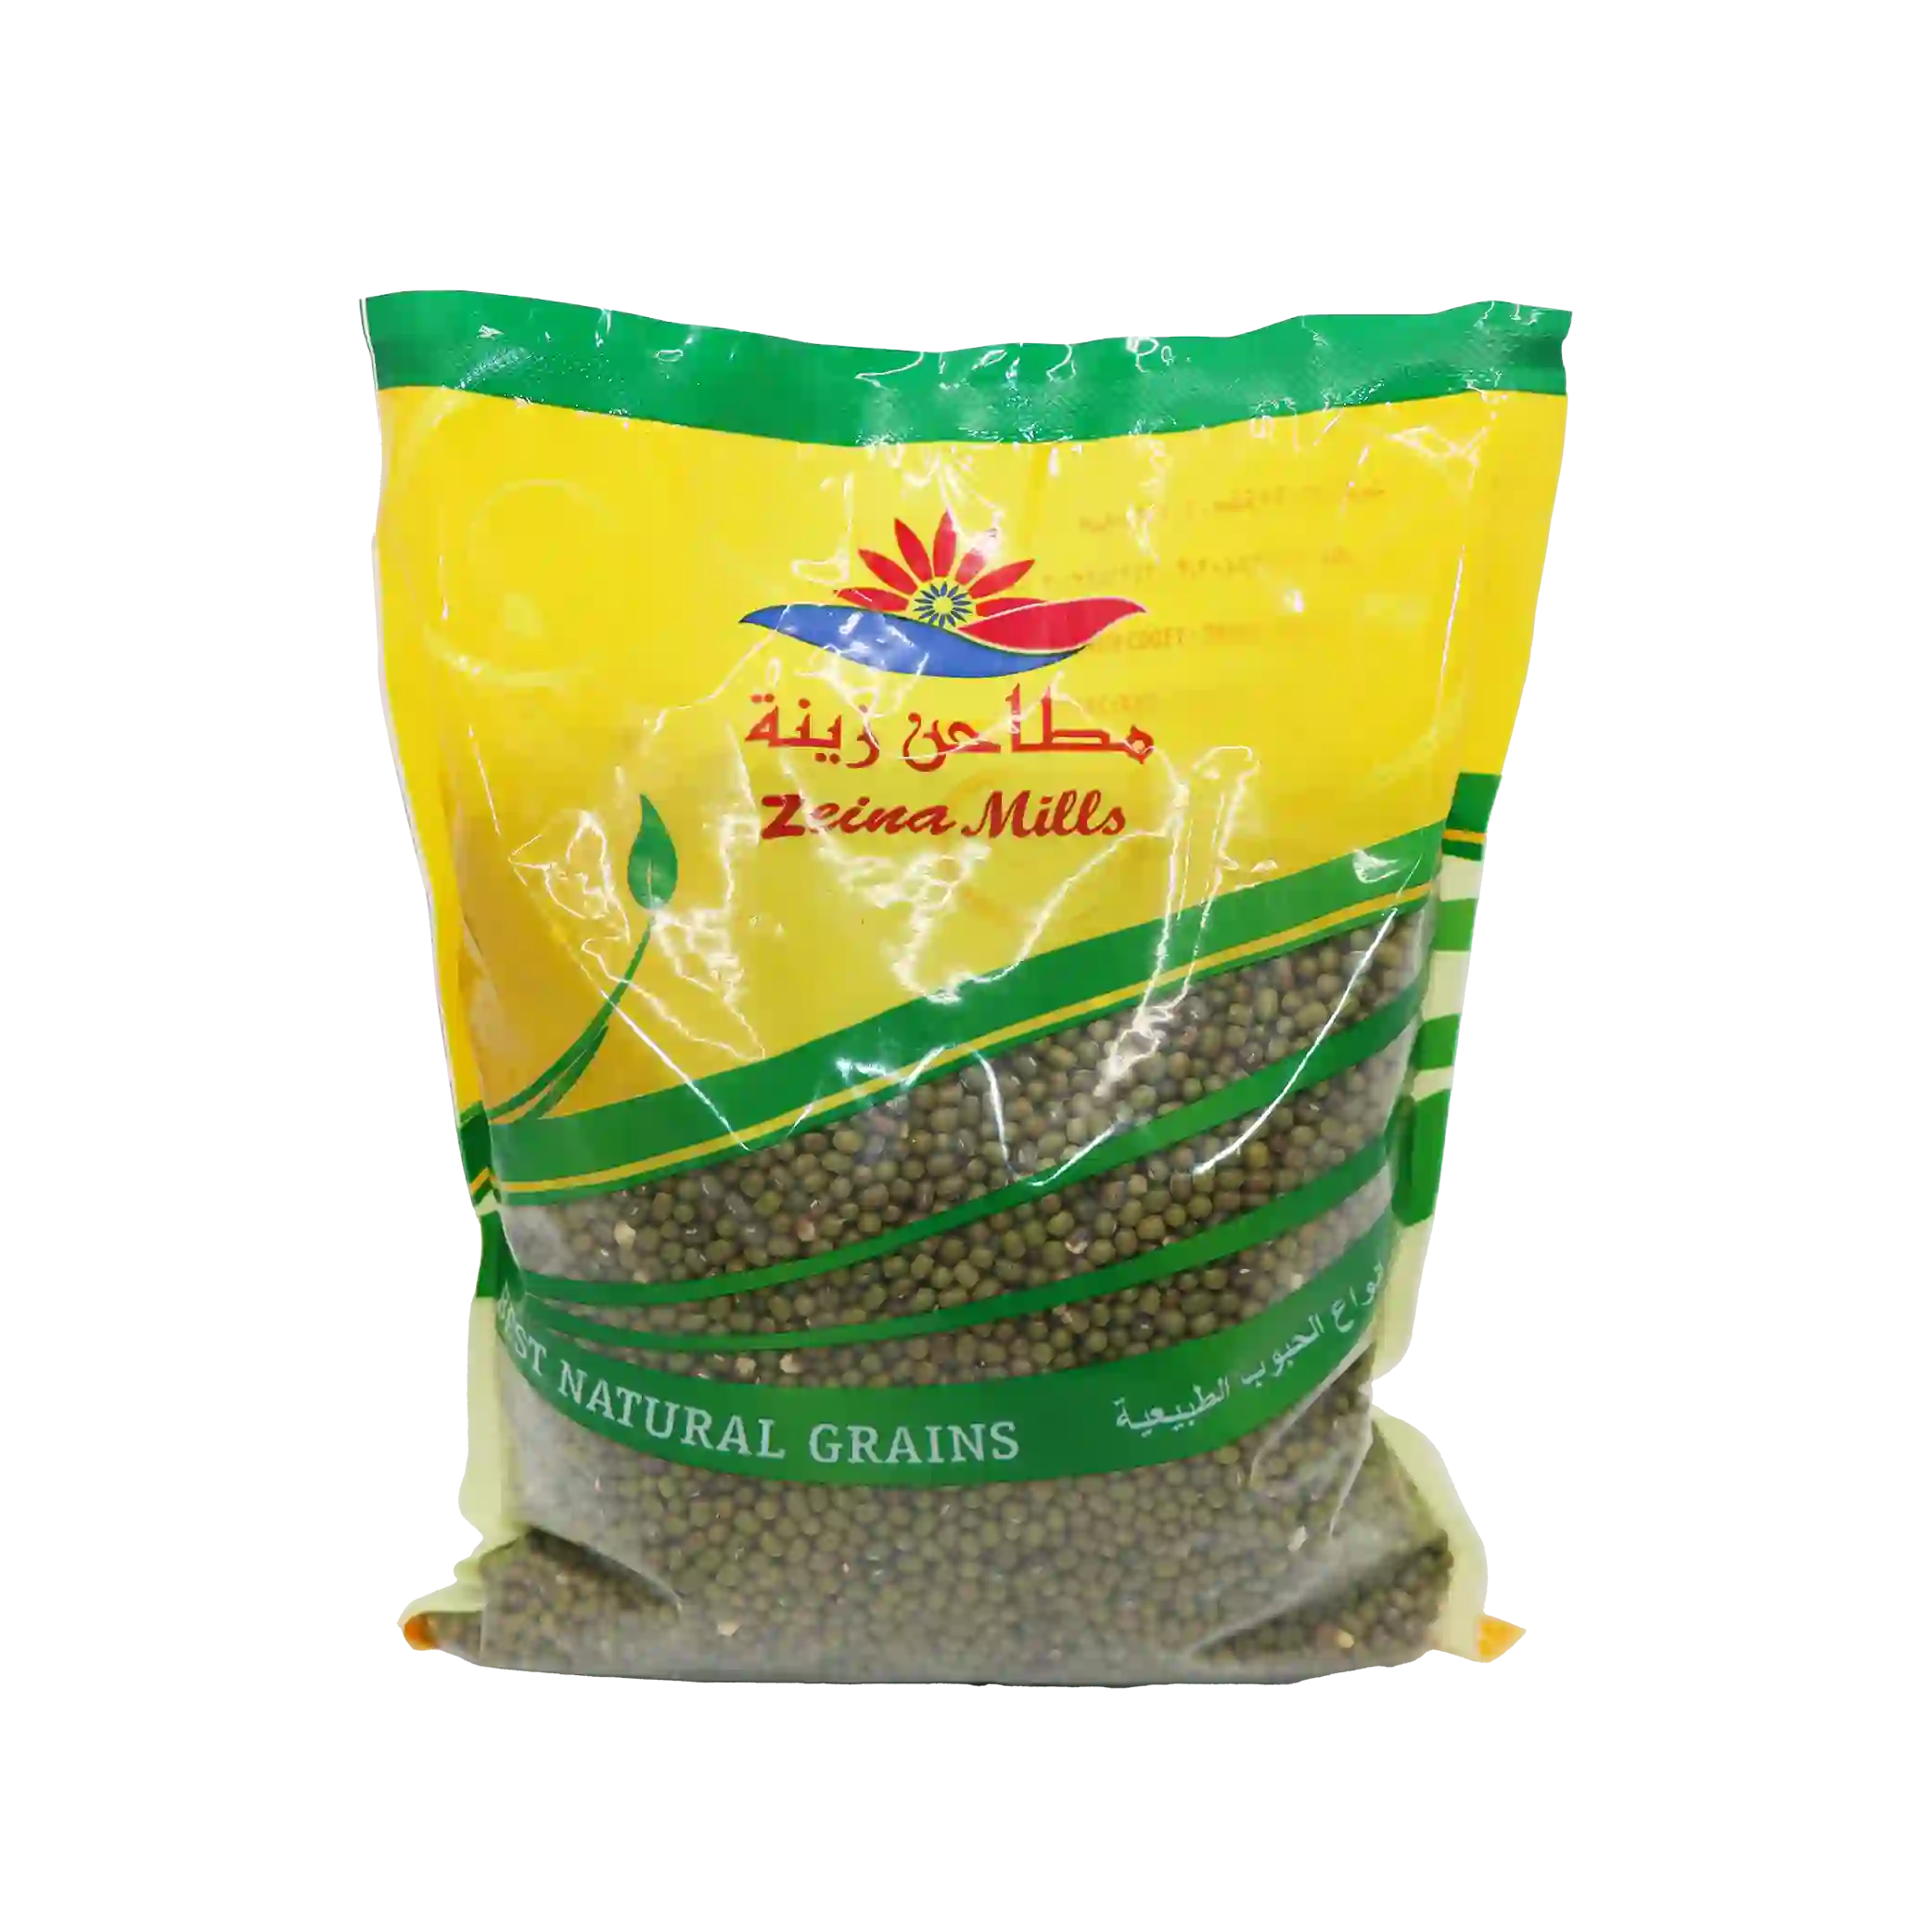 KAC - Green mung beans - 1 kilo